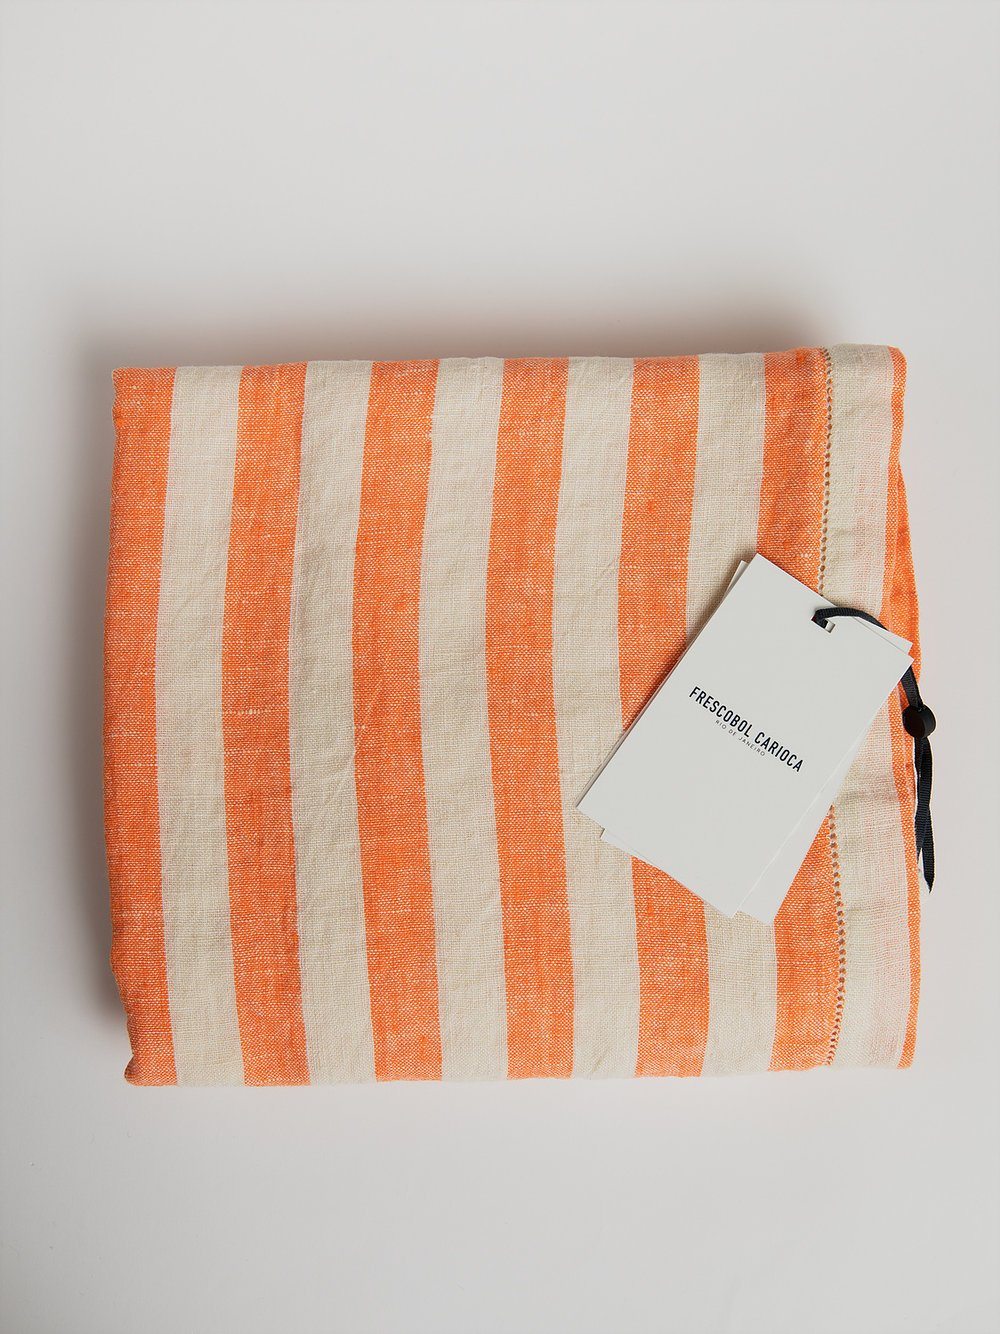 Linen Beach Towel - Orange / White Towel Frescobol Carioca 